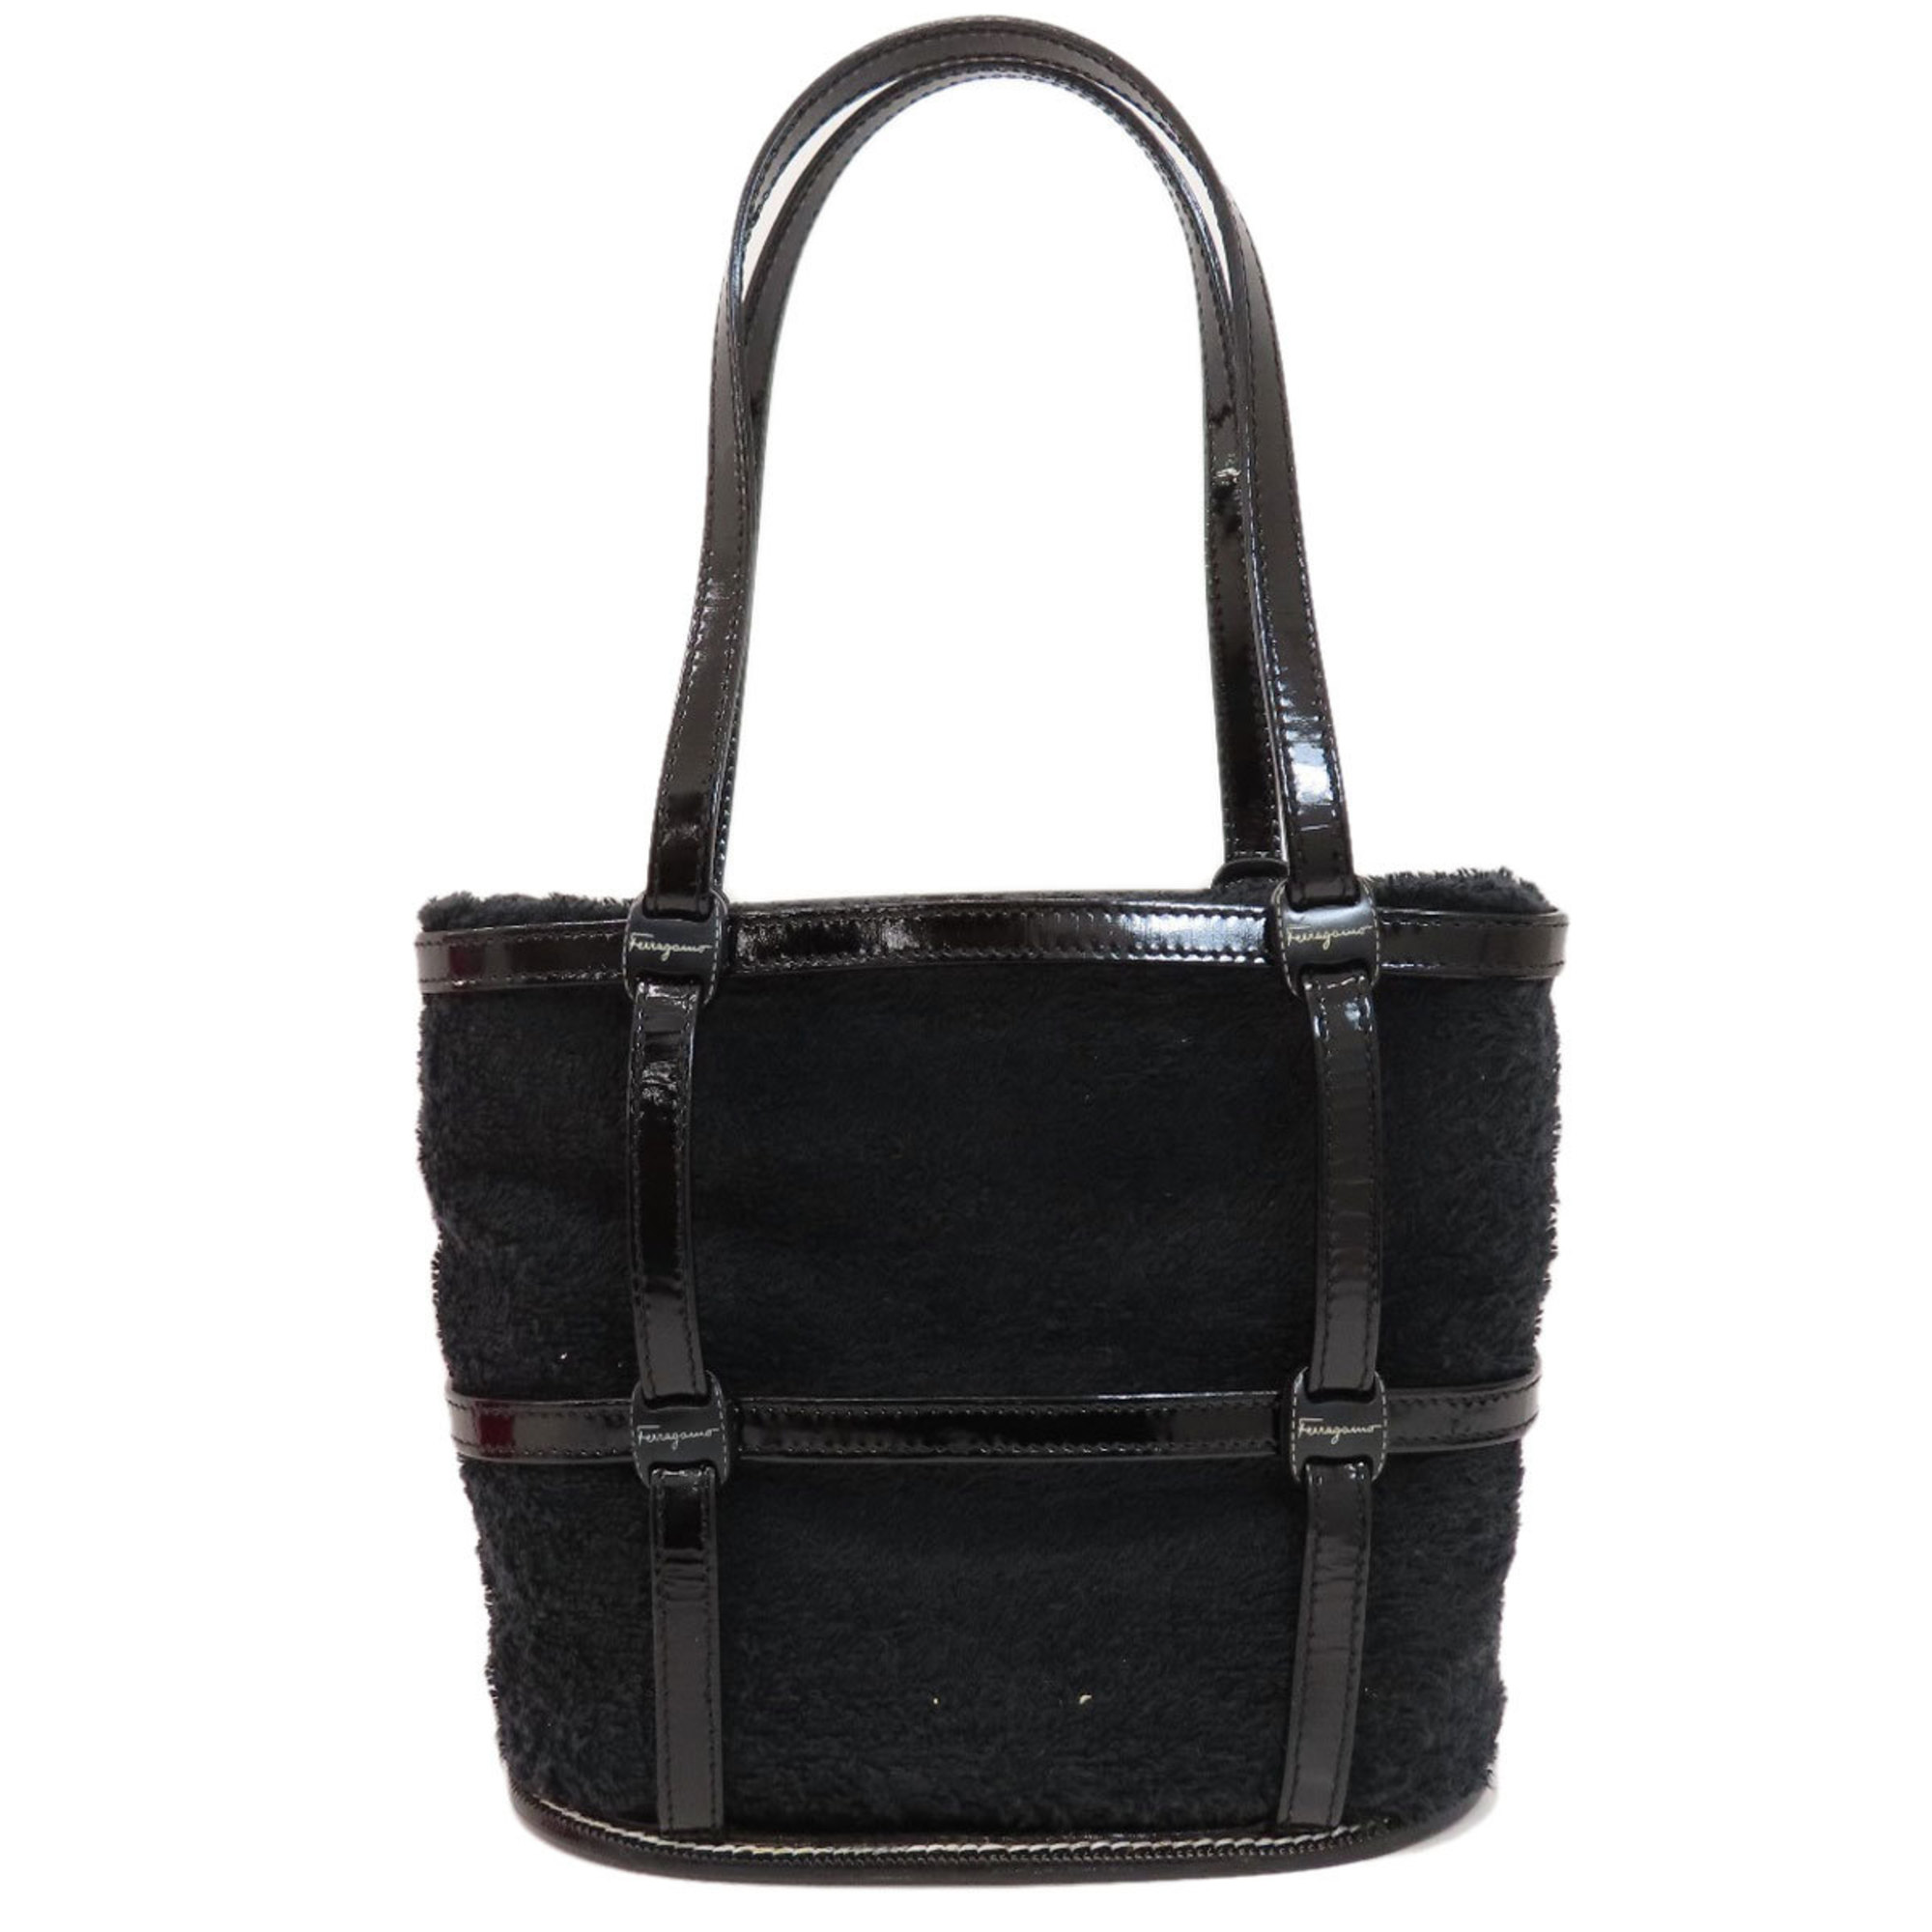 Salvatore Ferragamo handbag with spare bag, pile leather, ladies